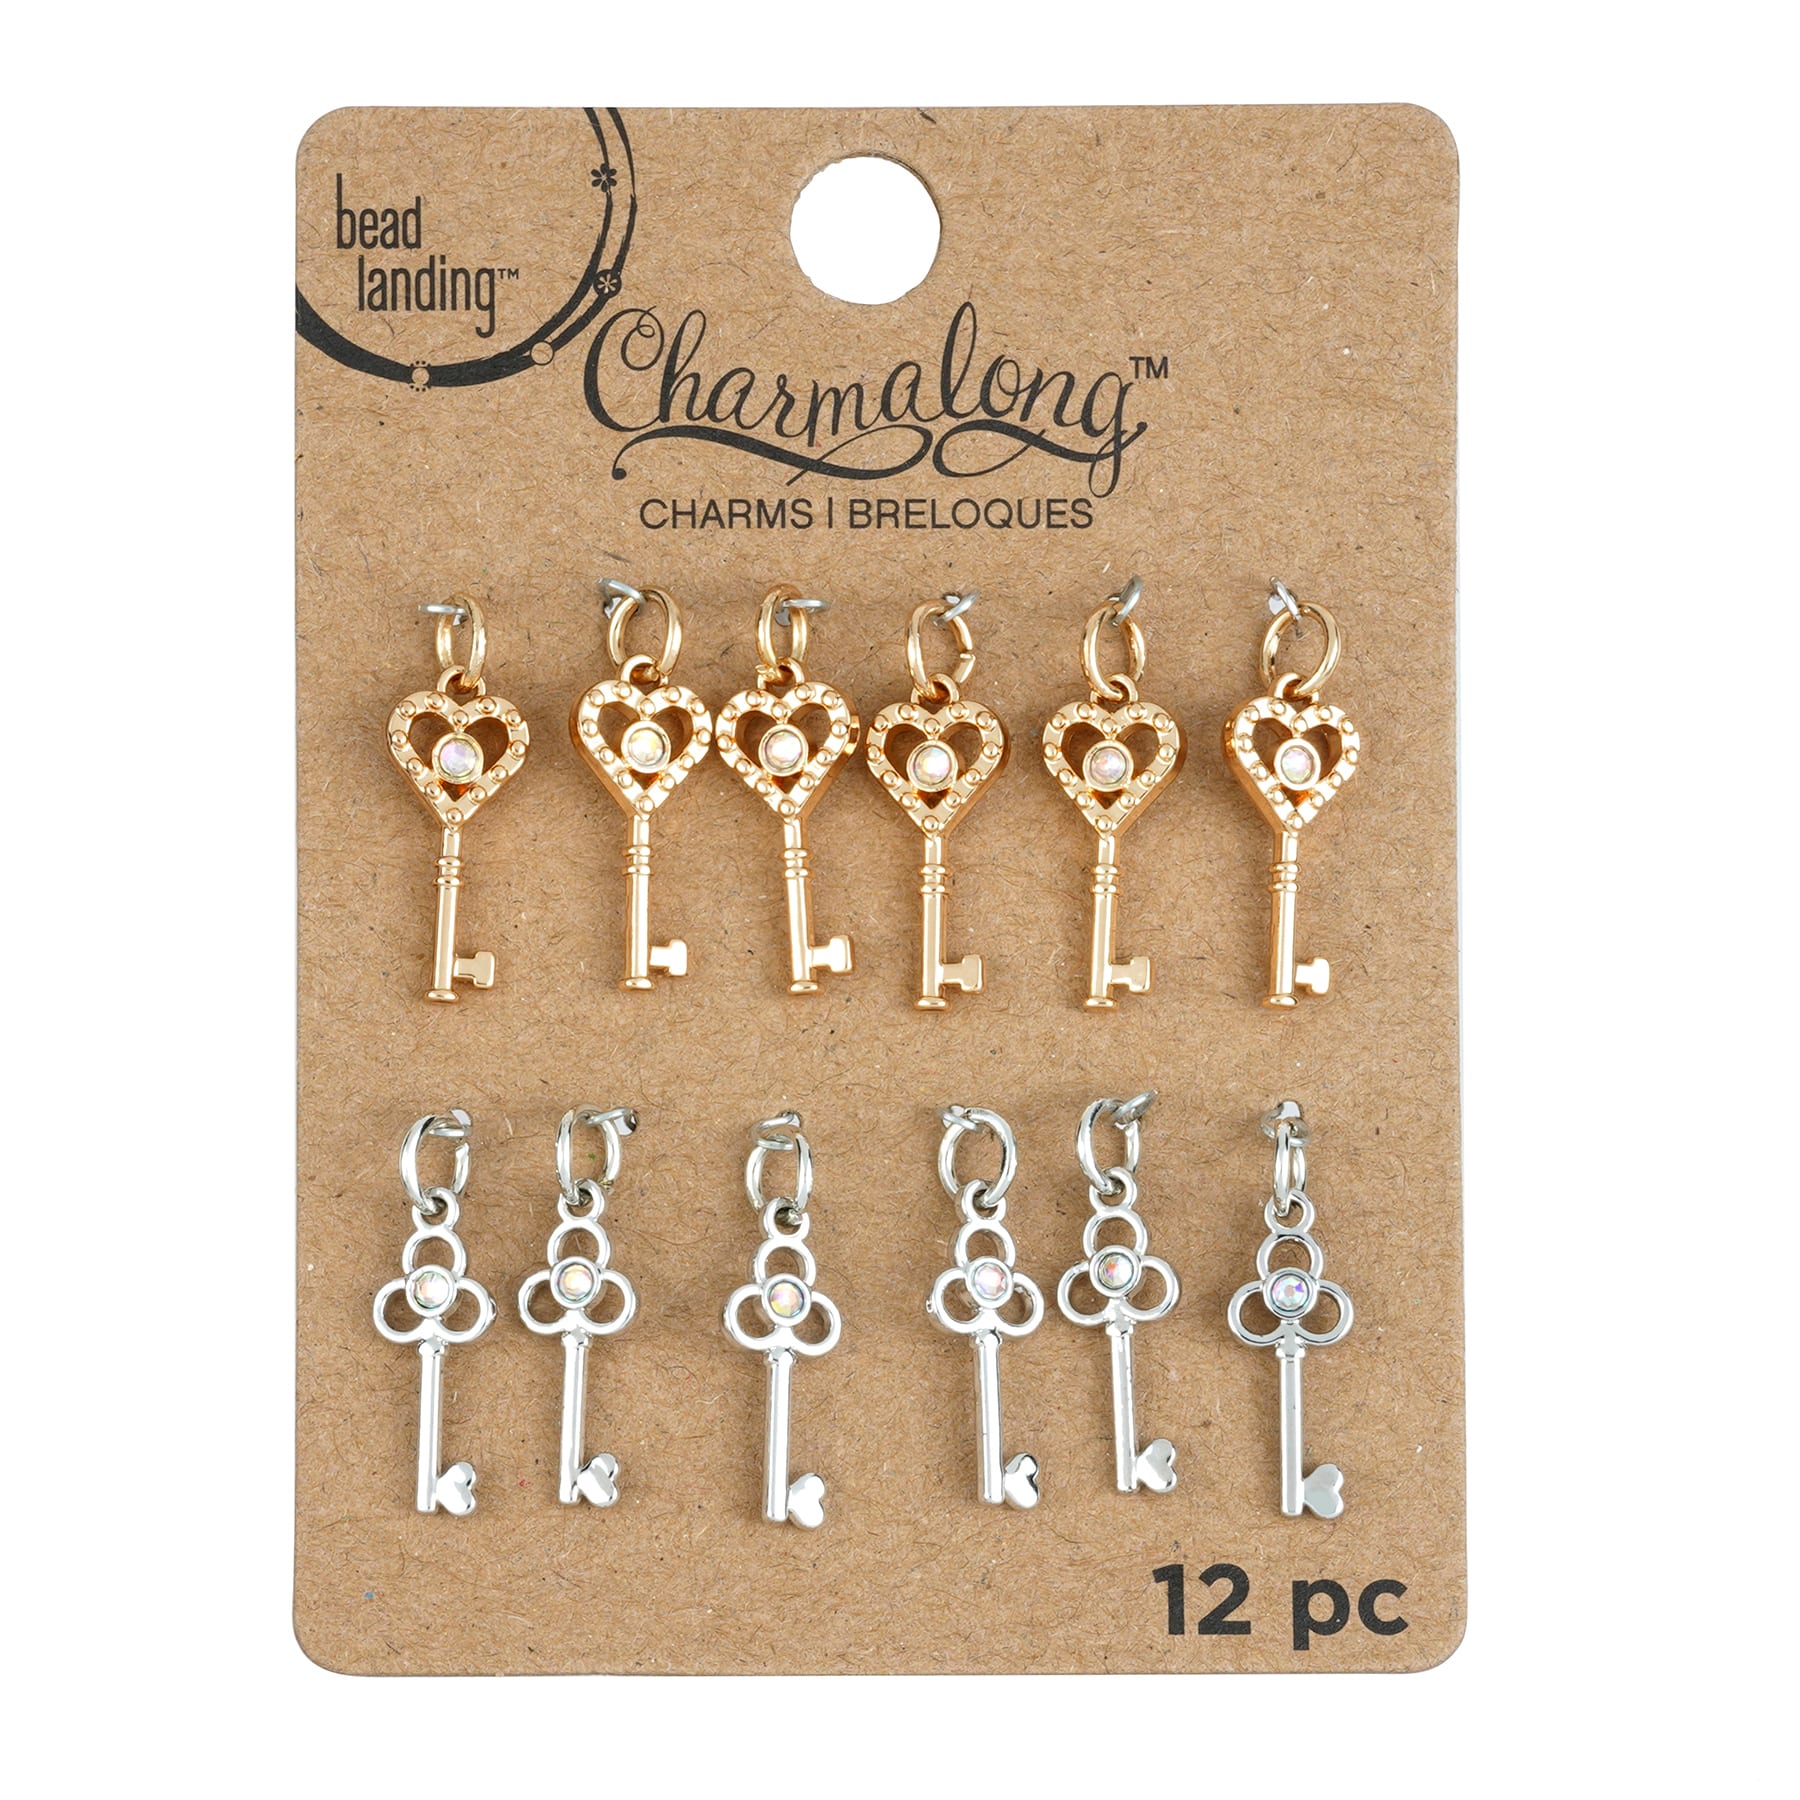 Charmalong&#x2122; Gold &#x26; Rhodium Key Charms by Bead Landing&#x2122;